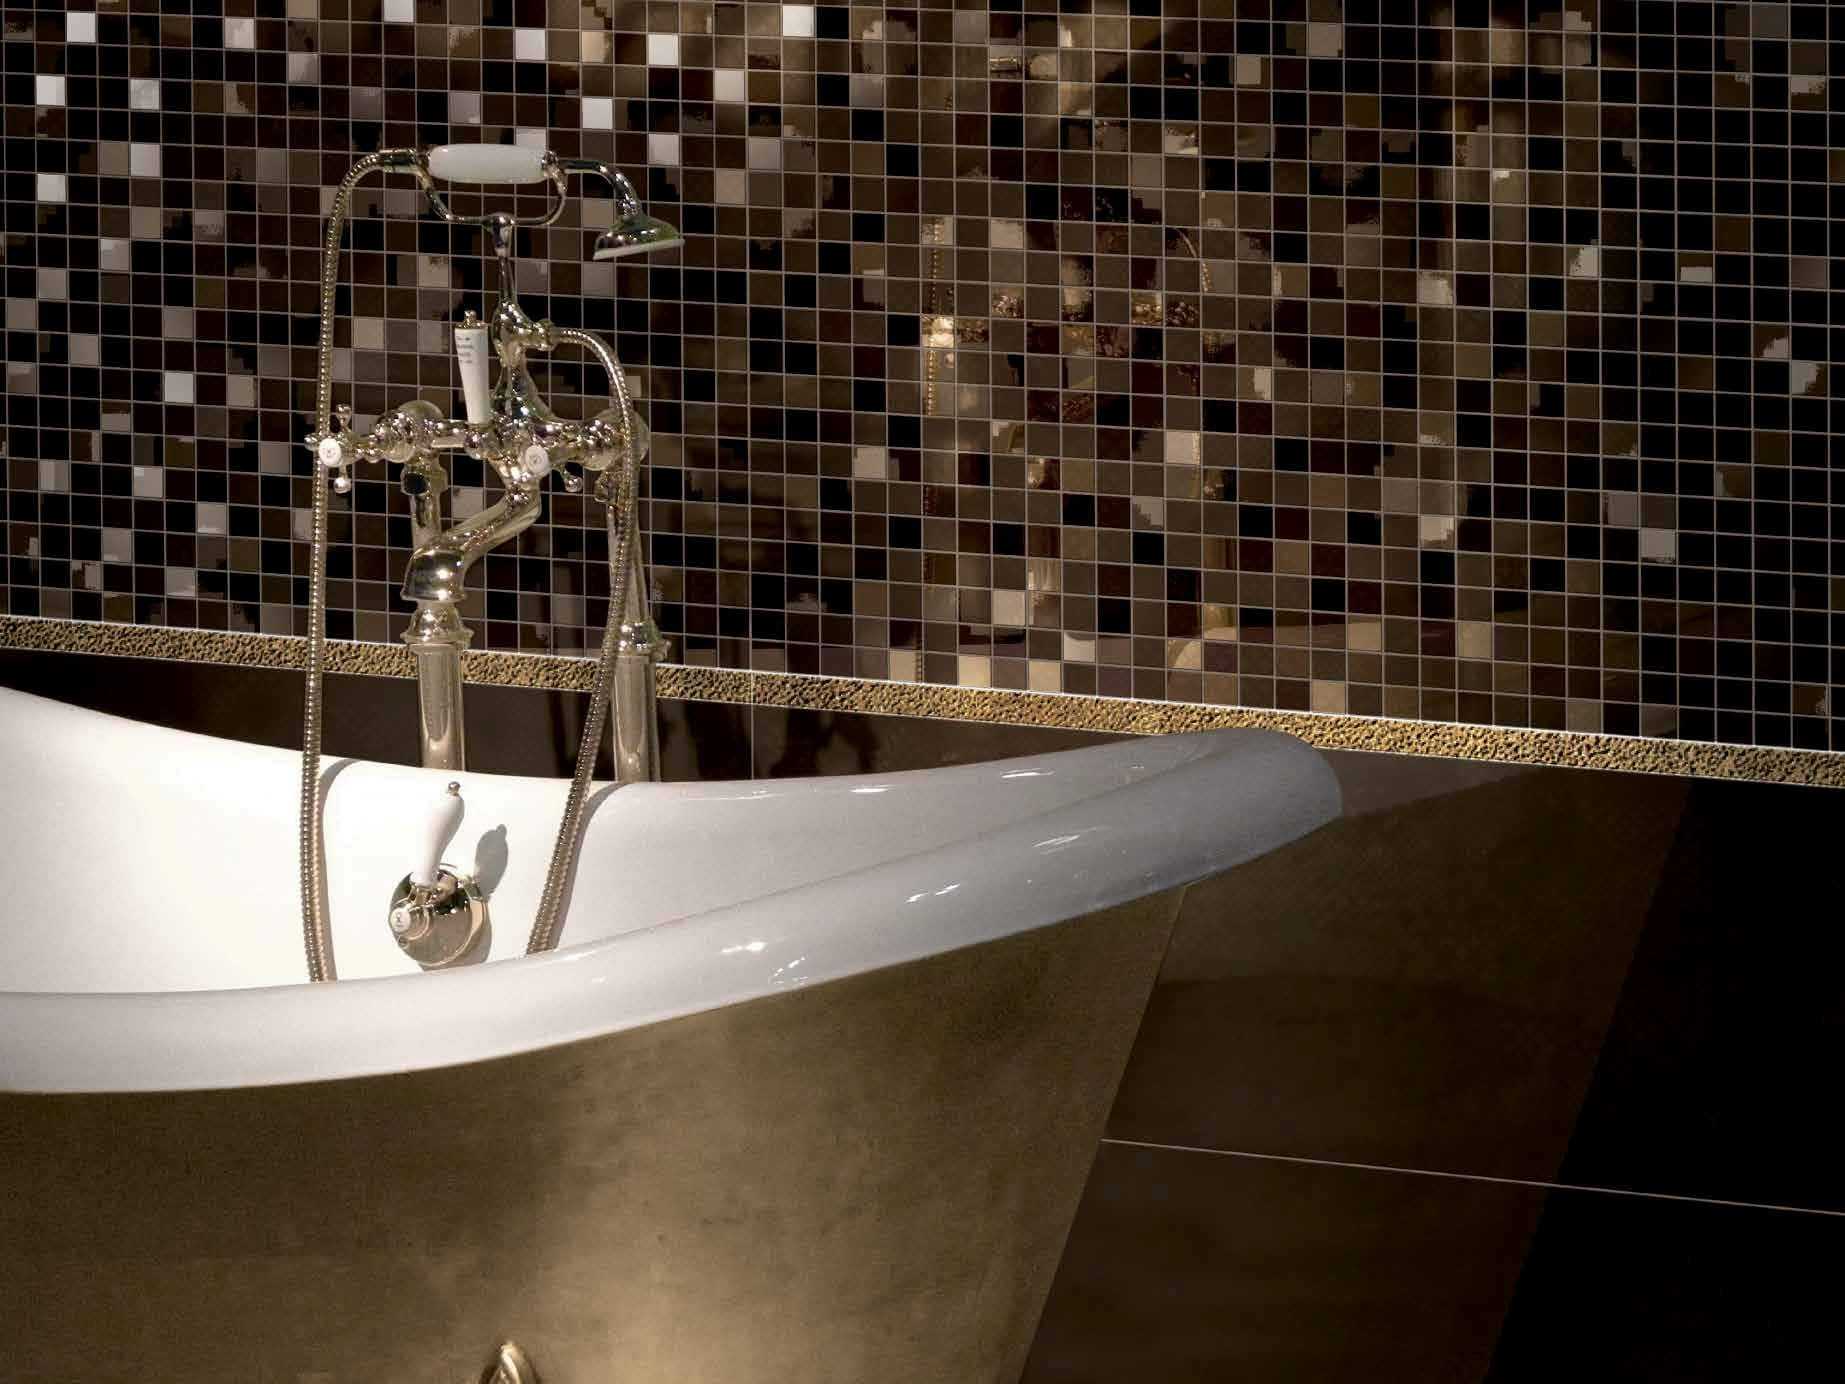 Интерьер мозаика мозаика из битой плитки в ванной комнате глина материал бросовый